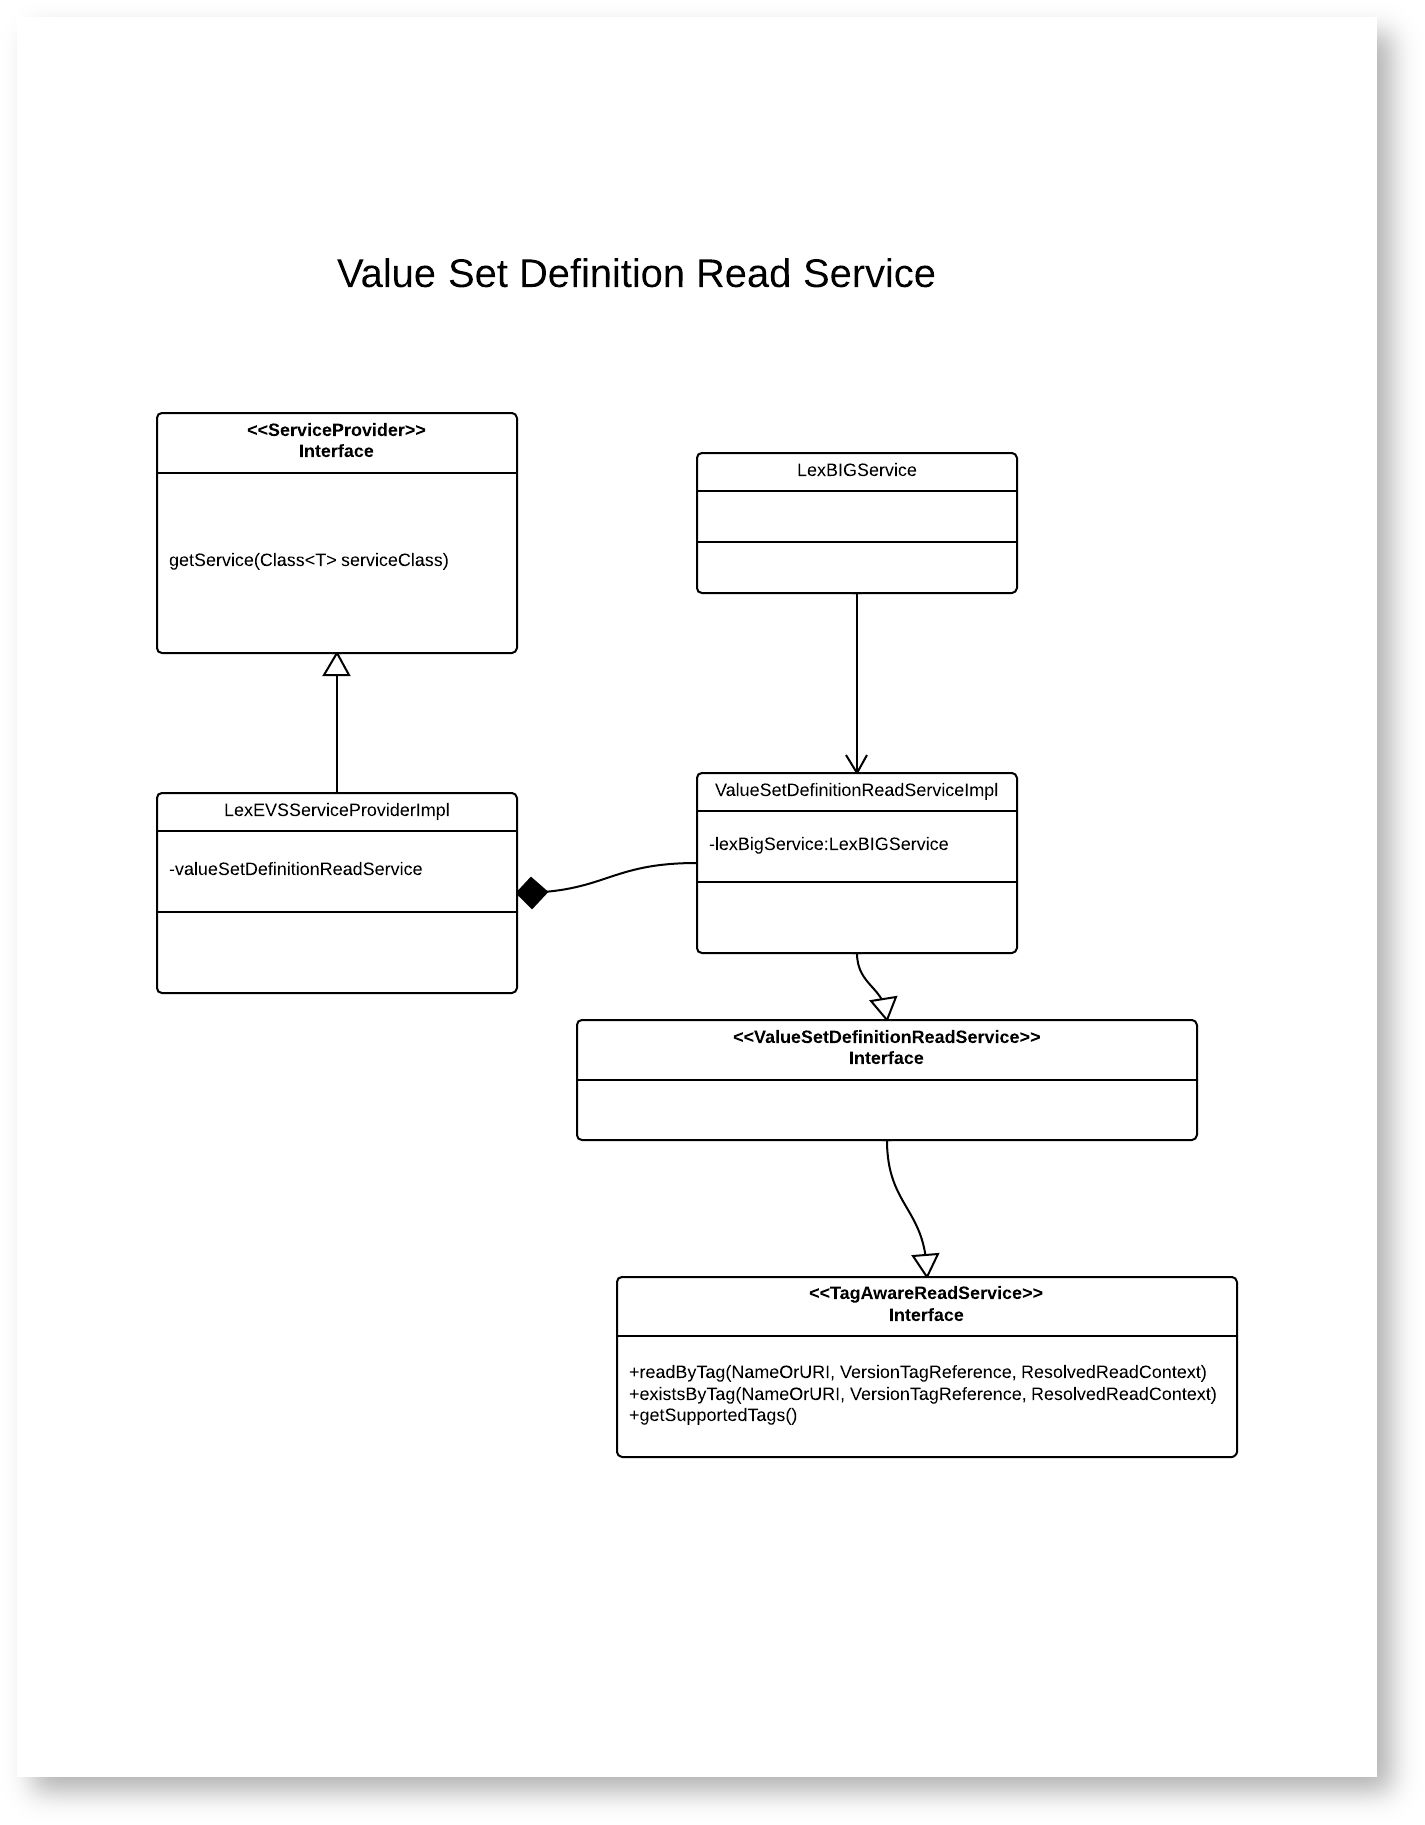 Value set definition read service diagram